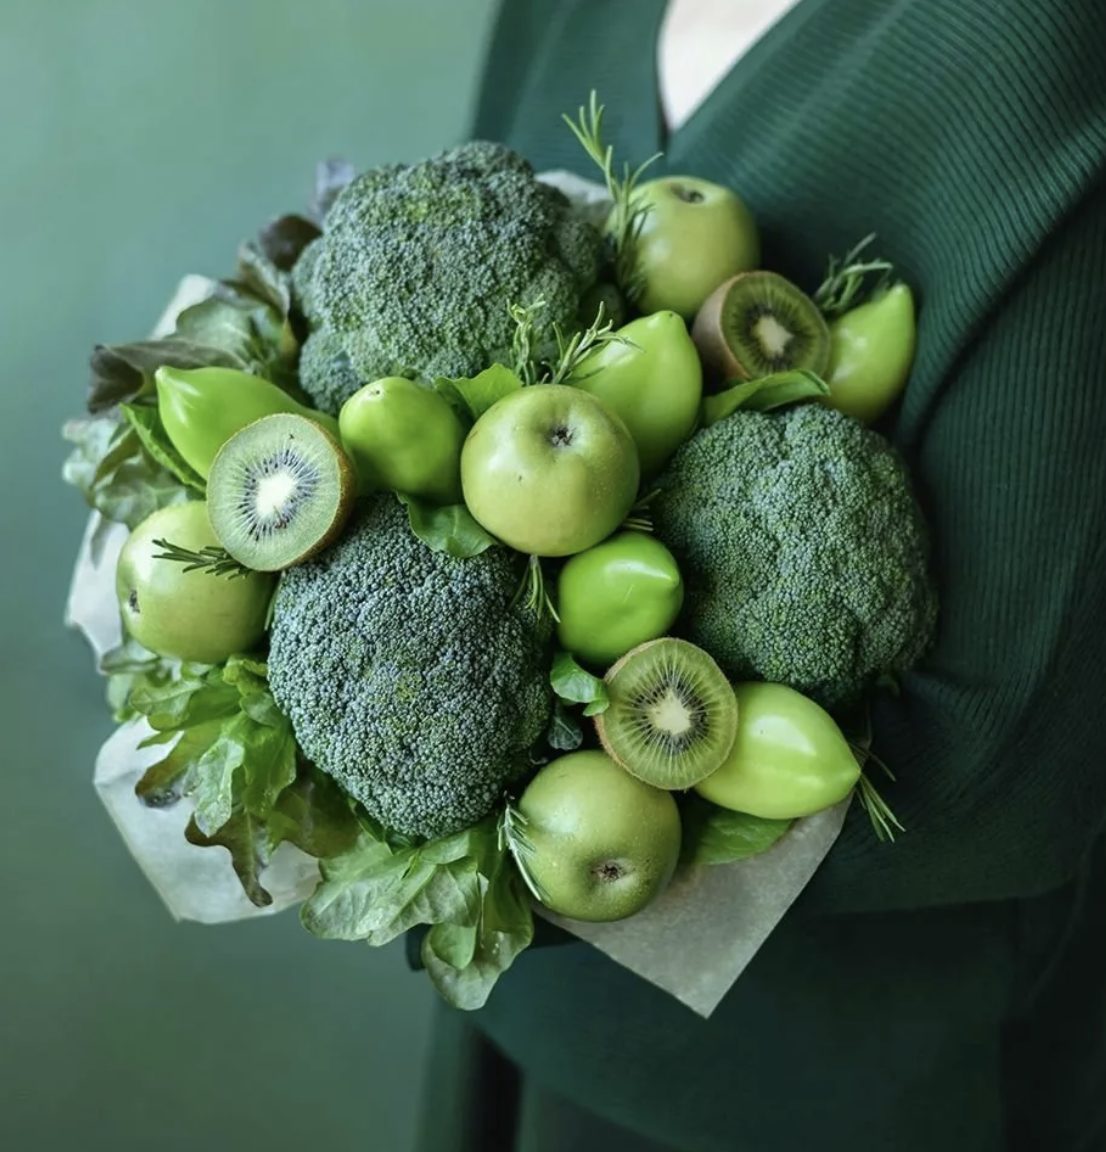 Купить фруктово-овощной зеленый букет Лес по доступной цене с доставкой в  Москве и области в интернет-магазине Город Букетов